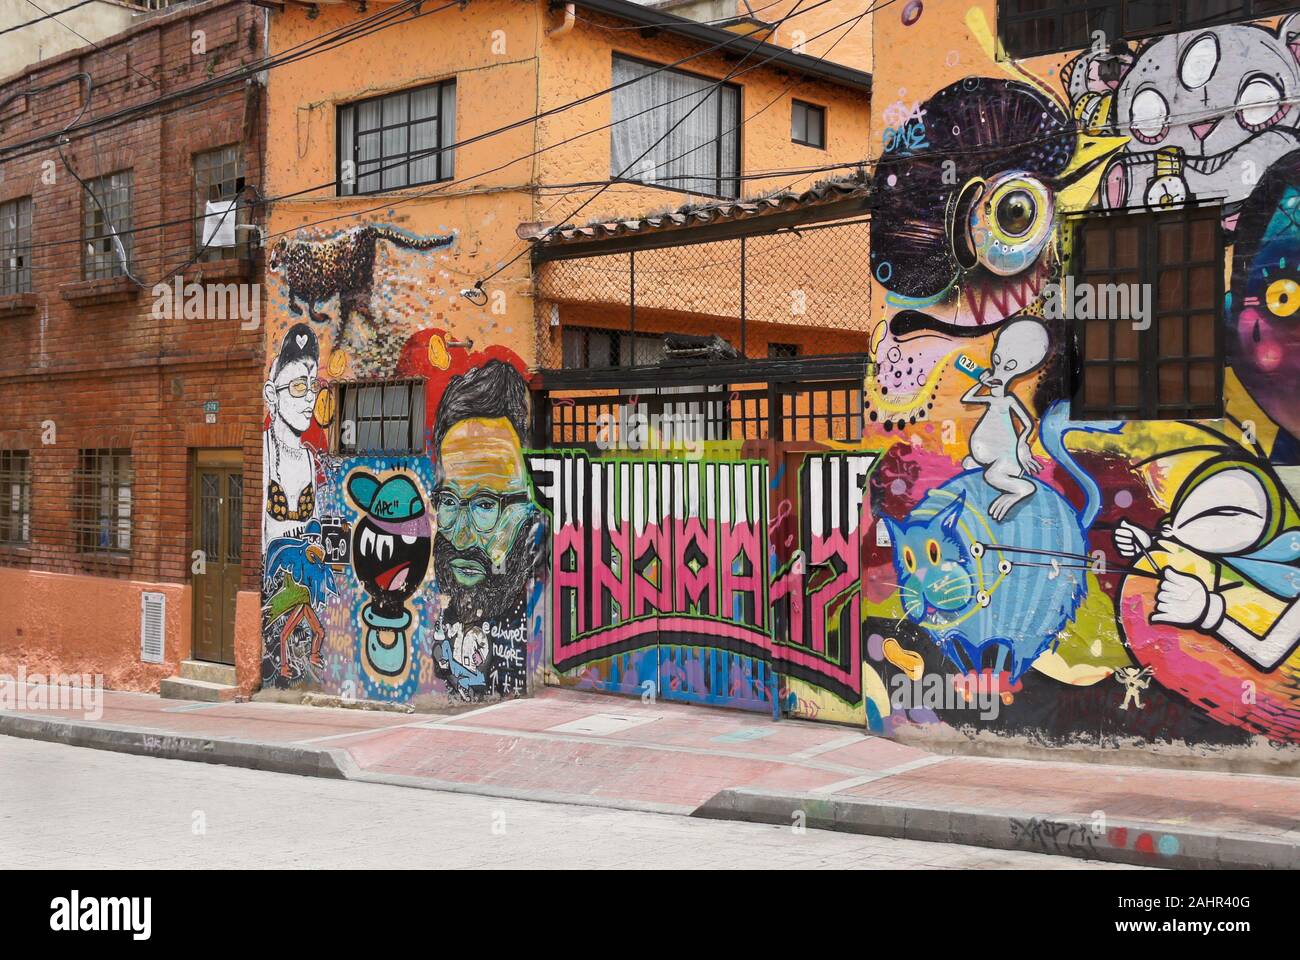 La street art e graffiti dipinta sul gate e l'esterno degli edifici in Candelaria distretto di Bogotà, Colombia Foto Stock